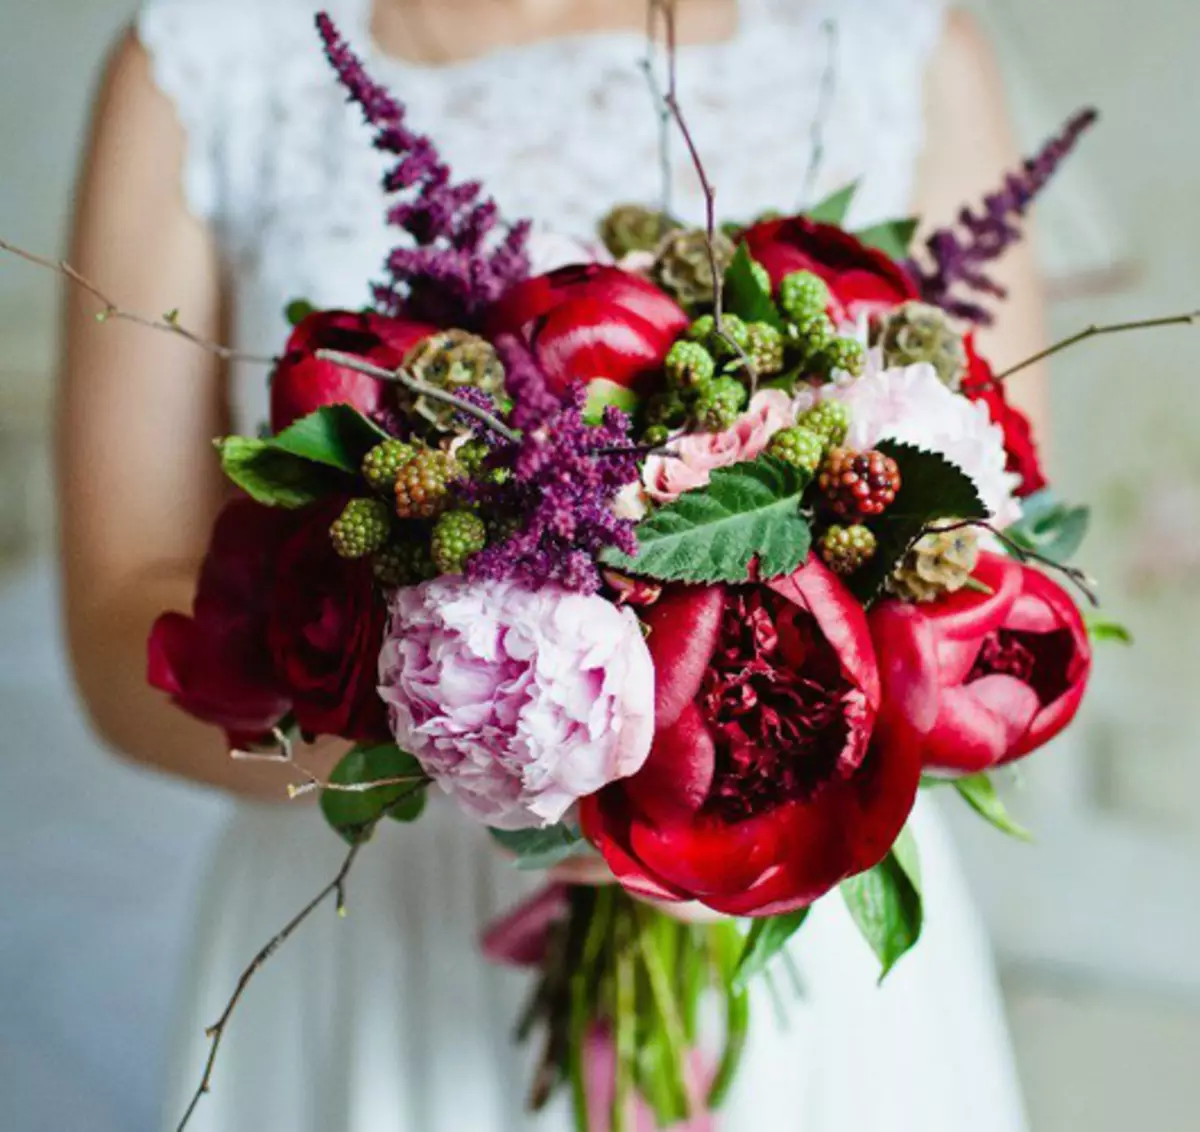 모란의 결혼식 꽃다발 (108 사진) : 흰색 수문과 빨간 칼라와의 조합, 결혼식 꽃다발의 부르고뉴, 라일락 및 자주색 꽃의 조합 8013_92